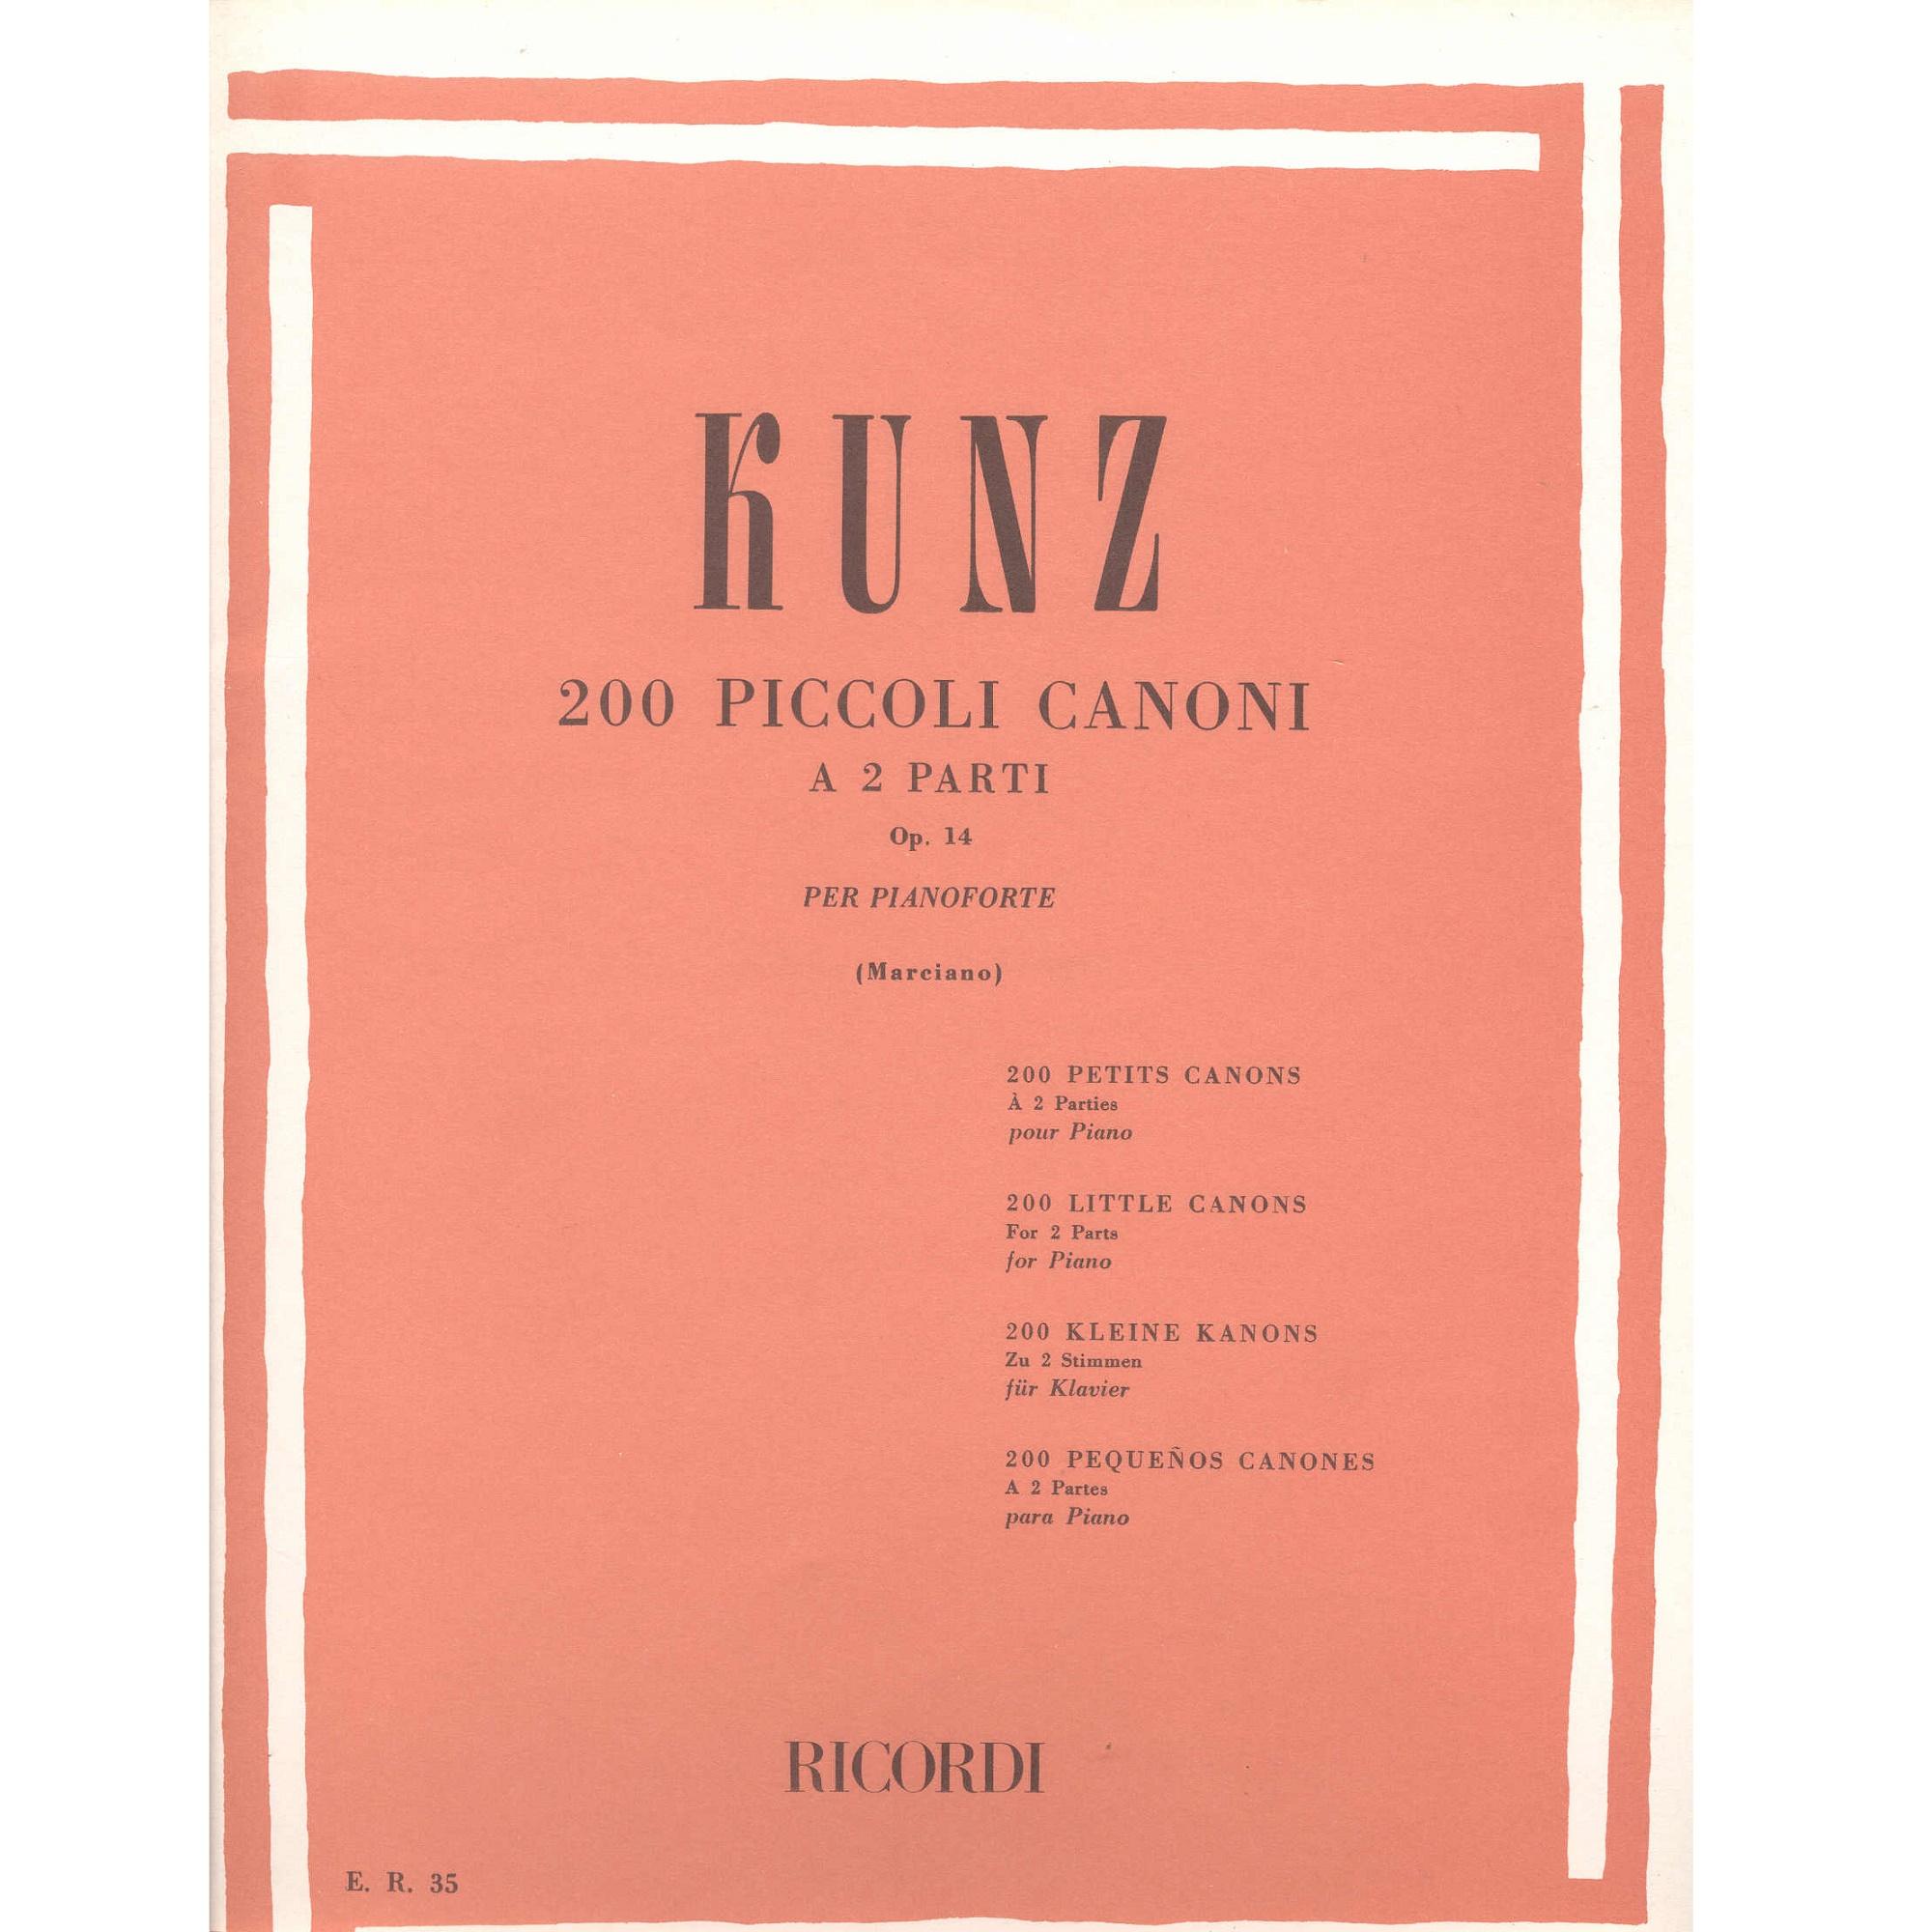 Kunz 200 PICCOLI CANONI a 2 Parti op. 14 per pianoforte (Marciano) - Ricordi